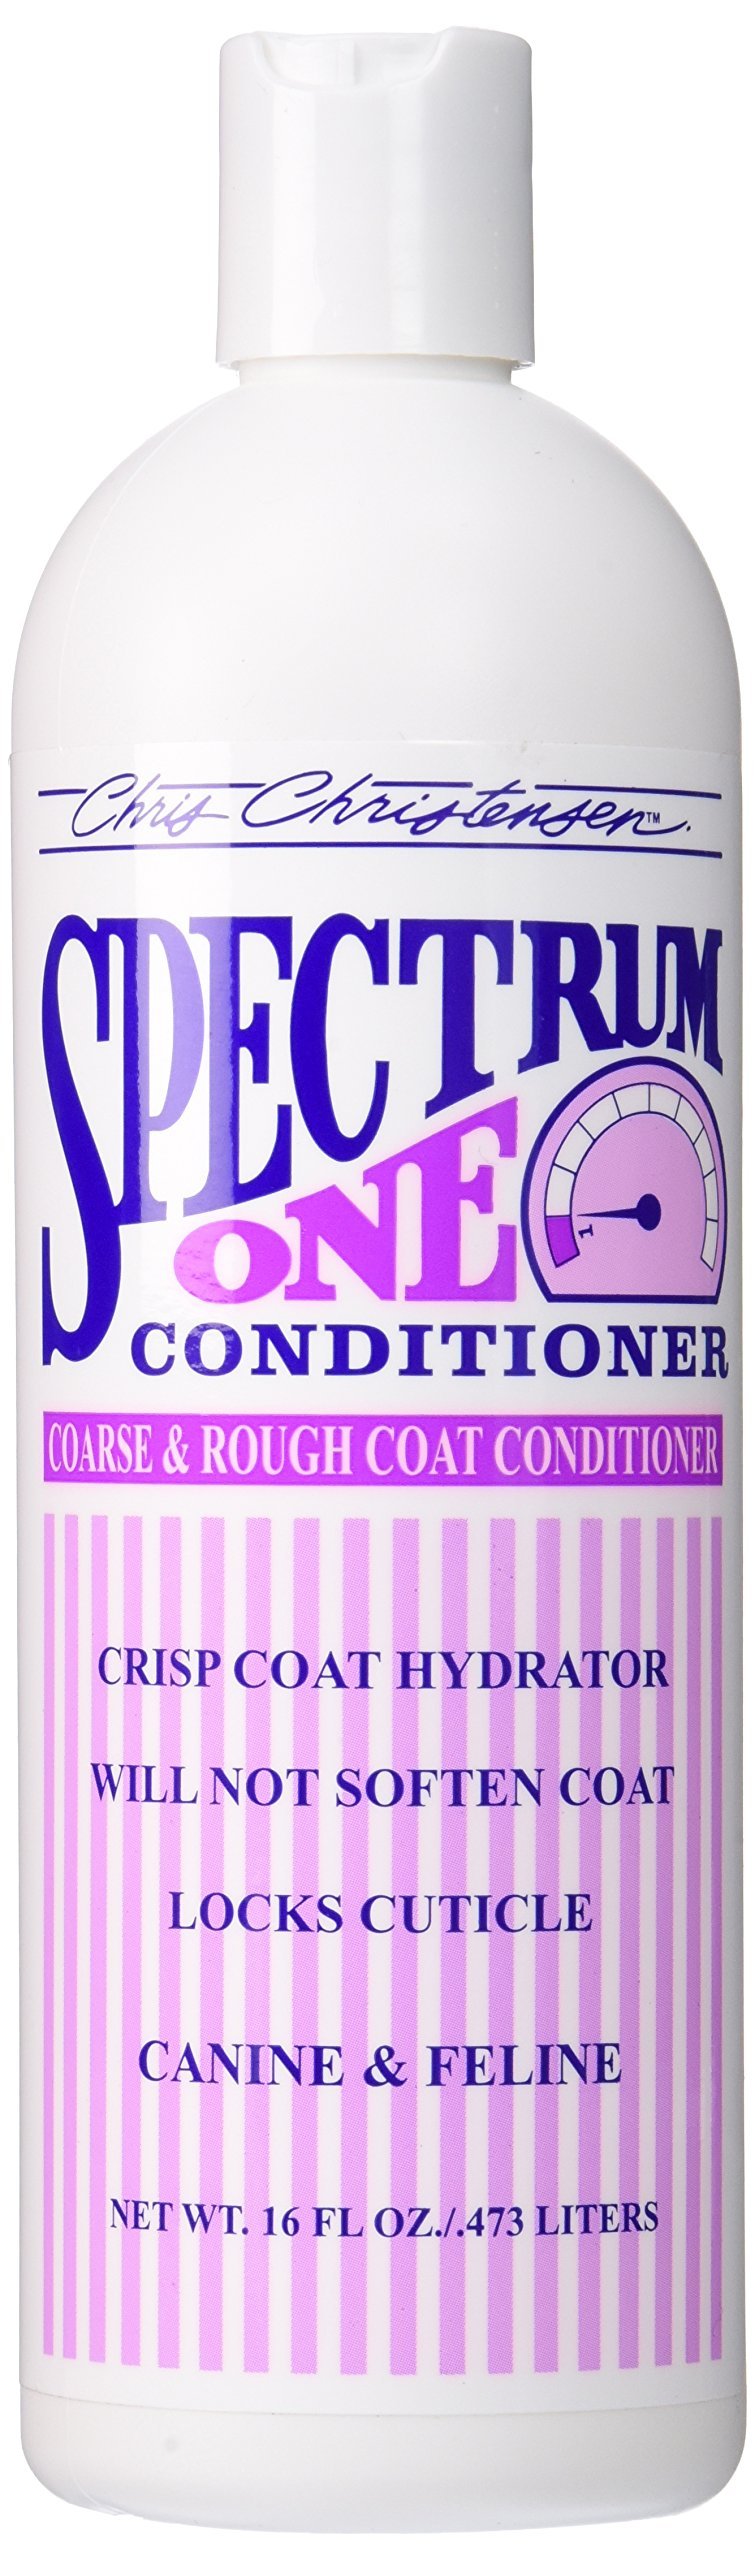 [Australia] - Chris Christensen Spectrum One Coarse and Rough Coat Conditioner 